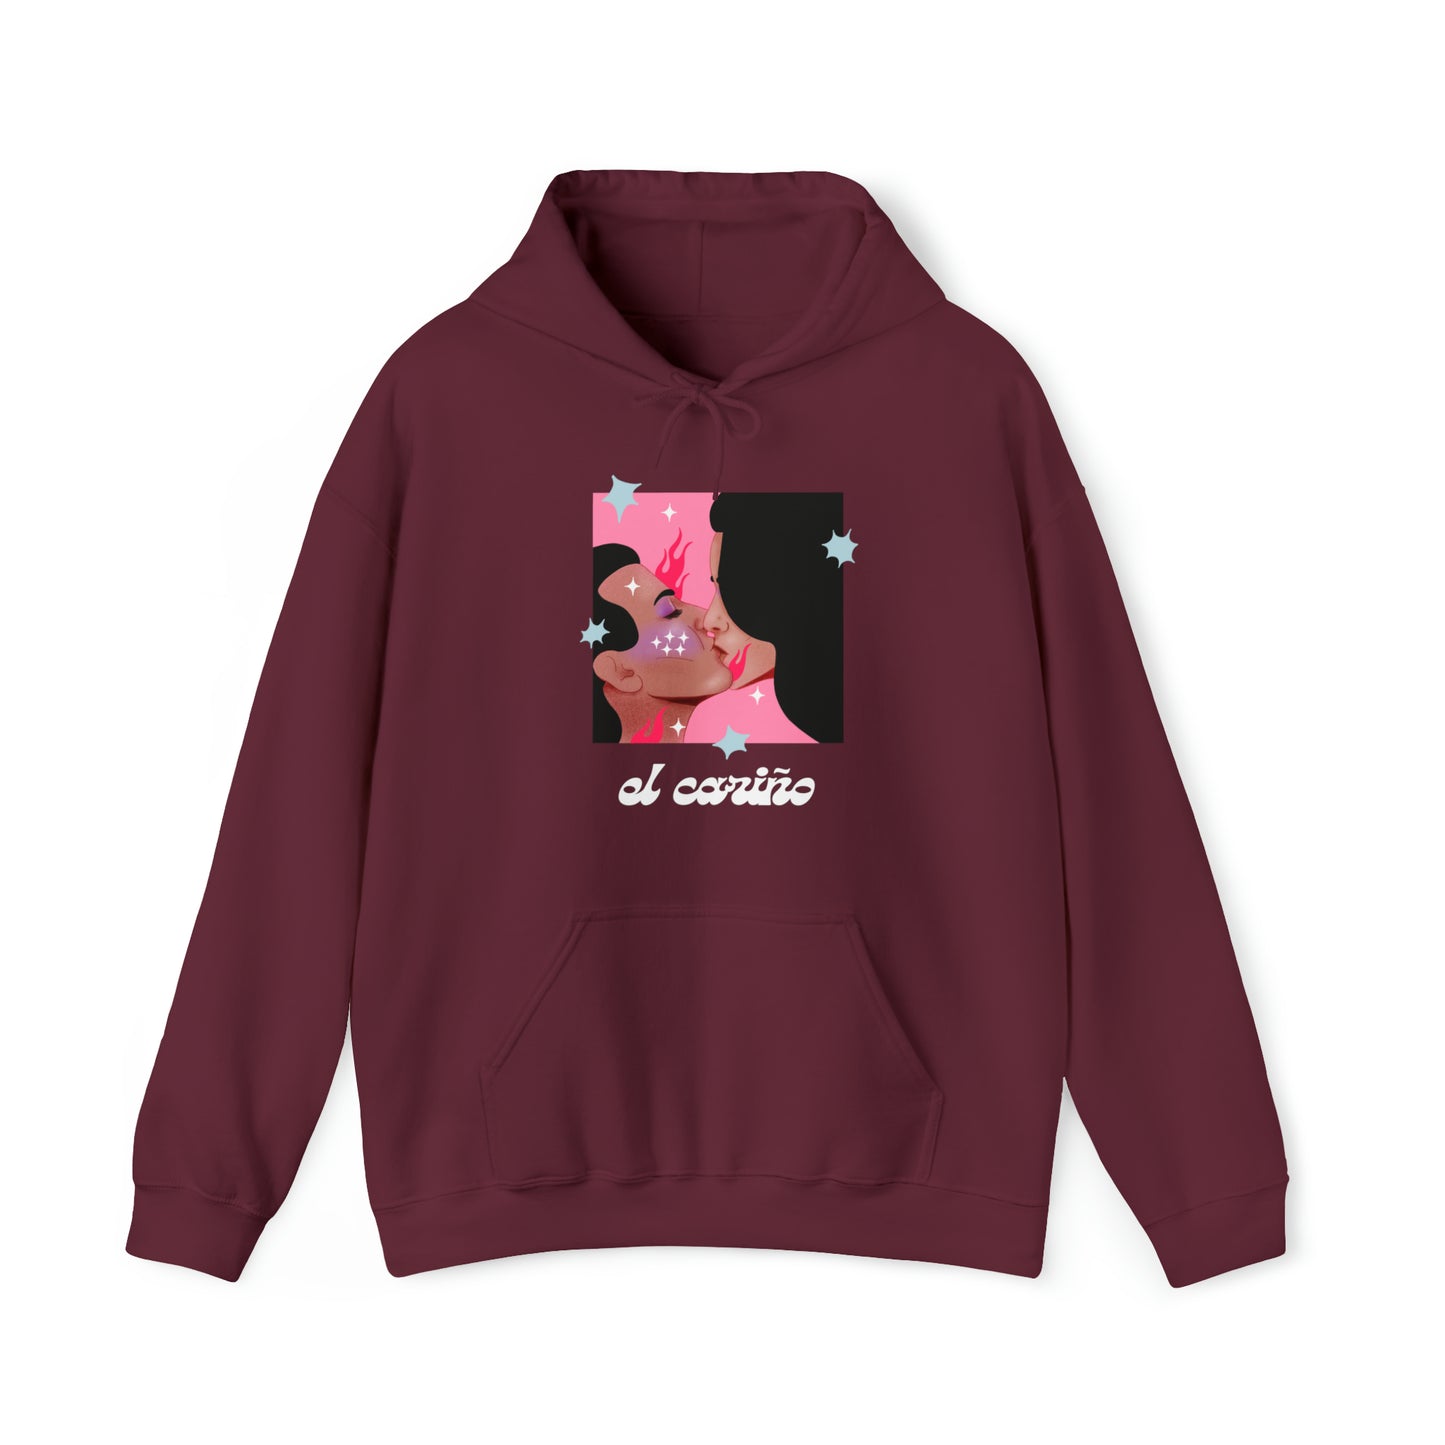 El Cariño hoodie